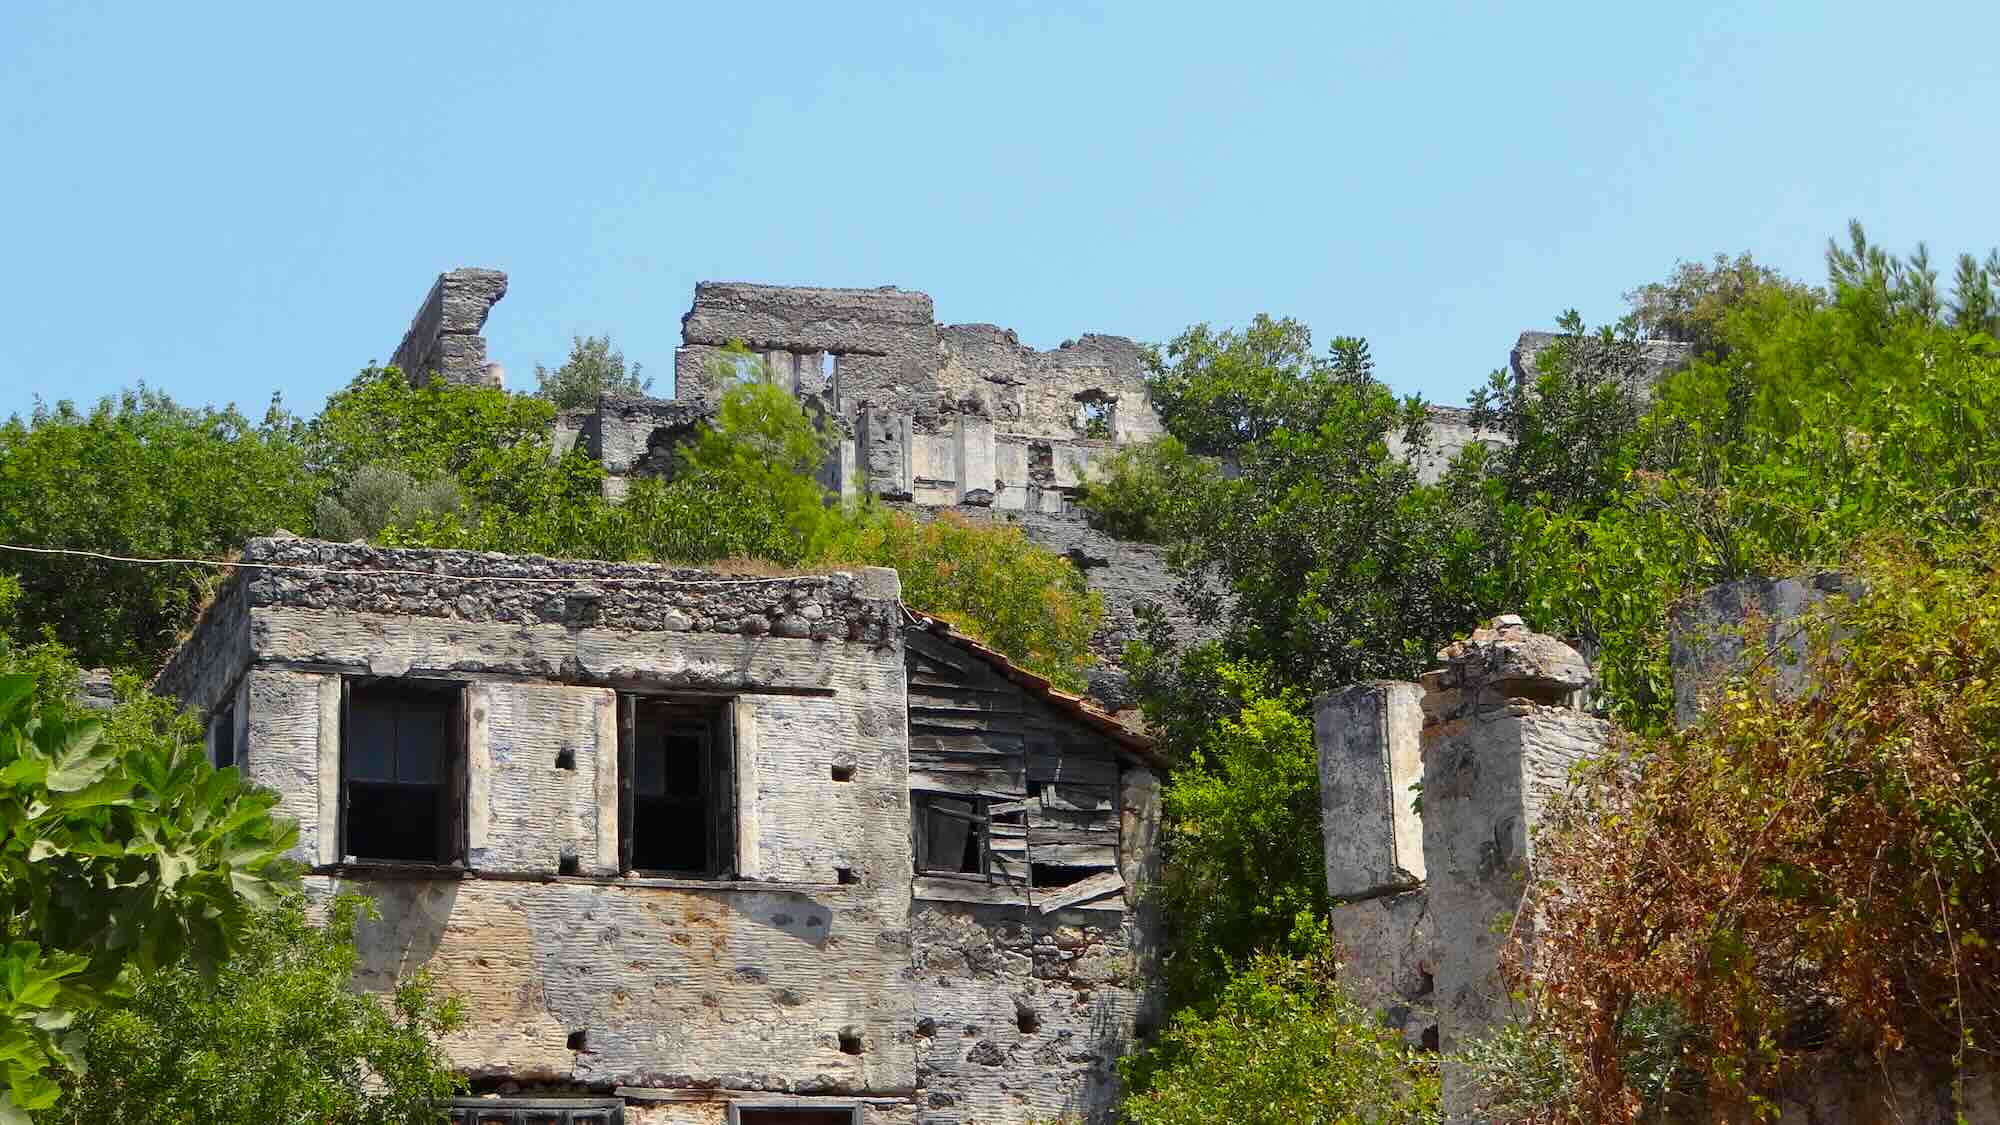 Rovine di case abbandonate in un borgo fantasma